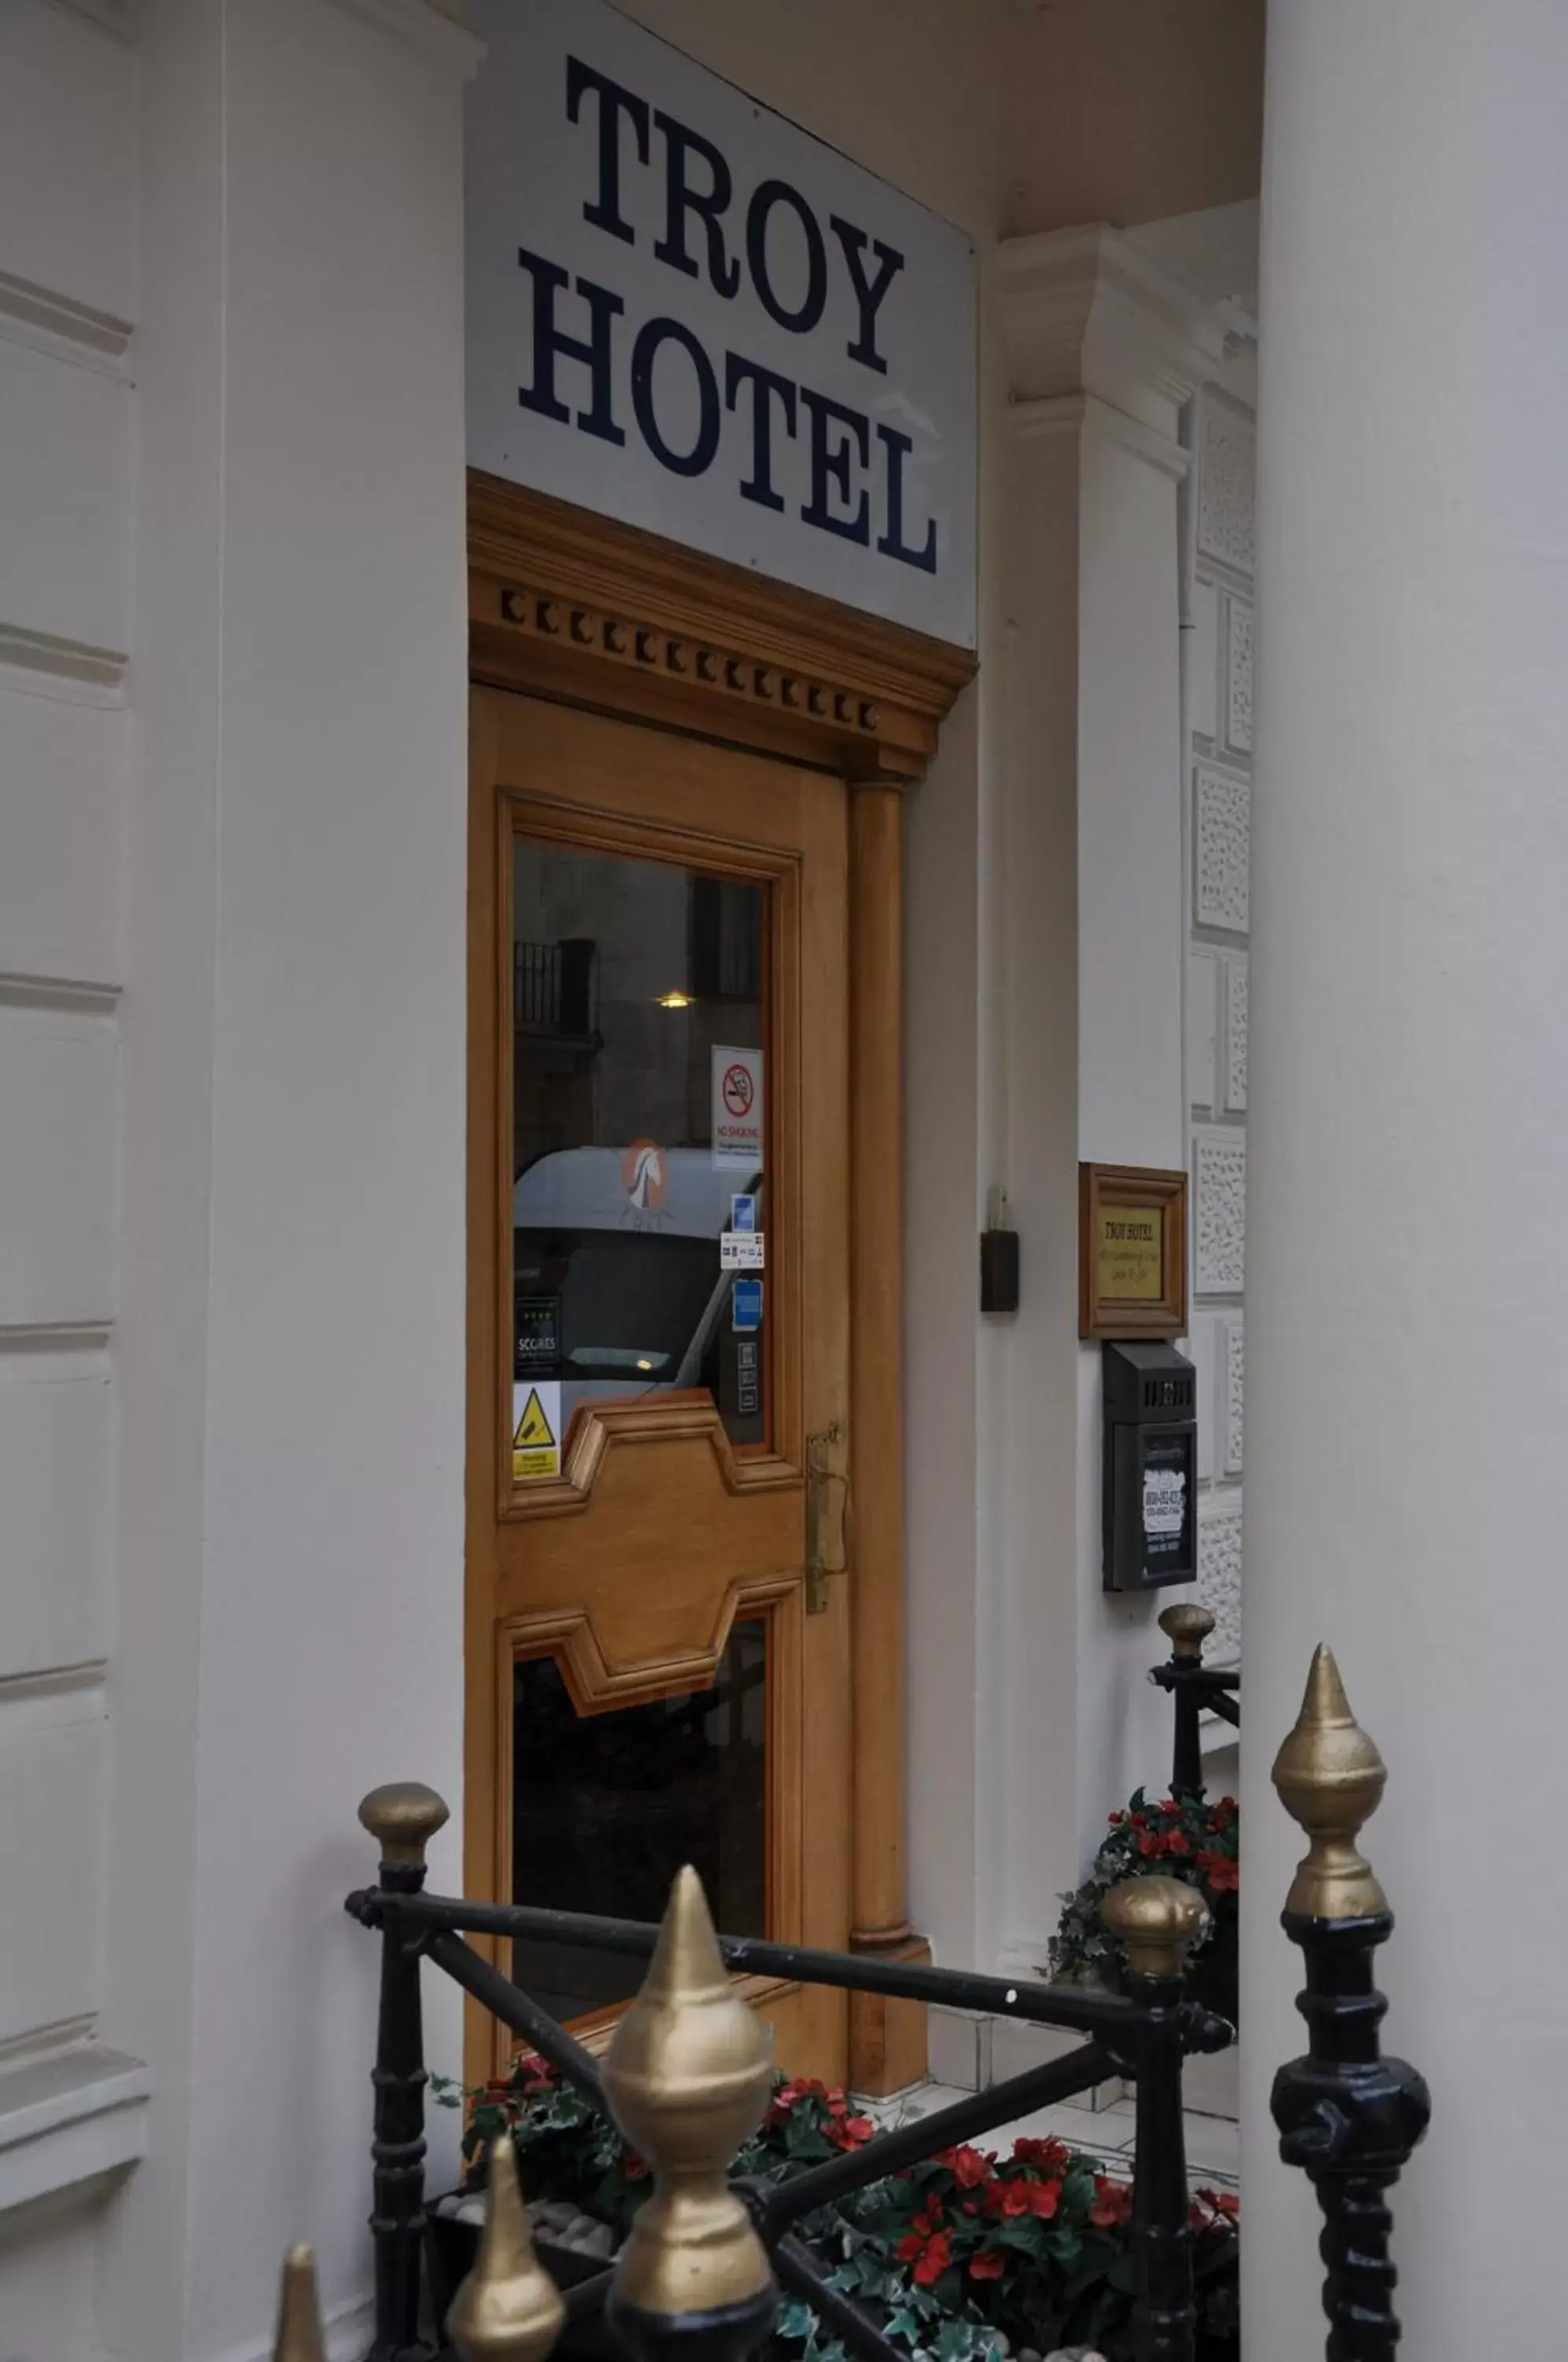 Facade/entrance in Troy Hotel